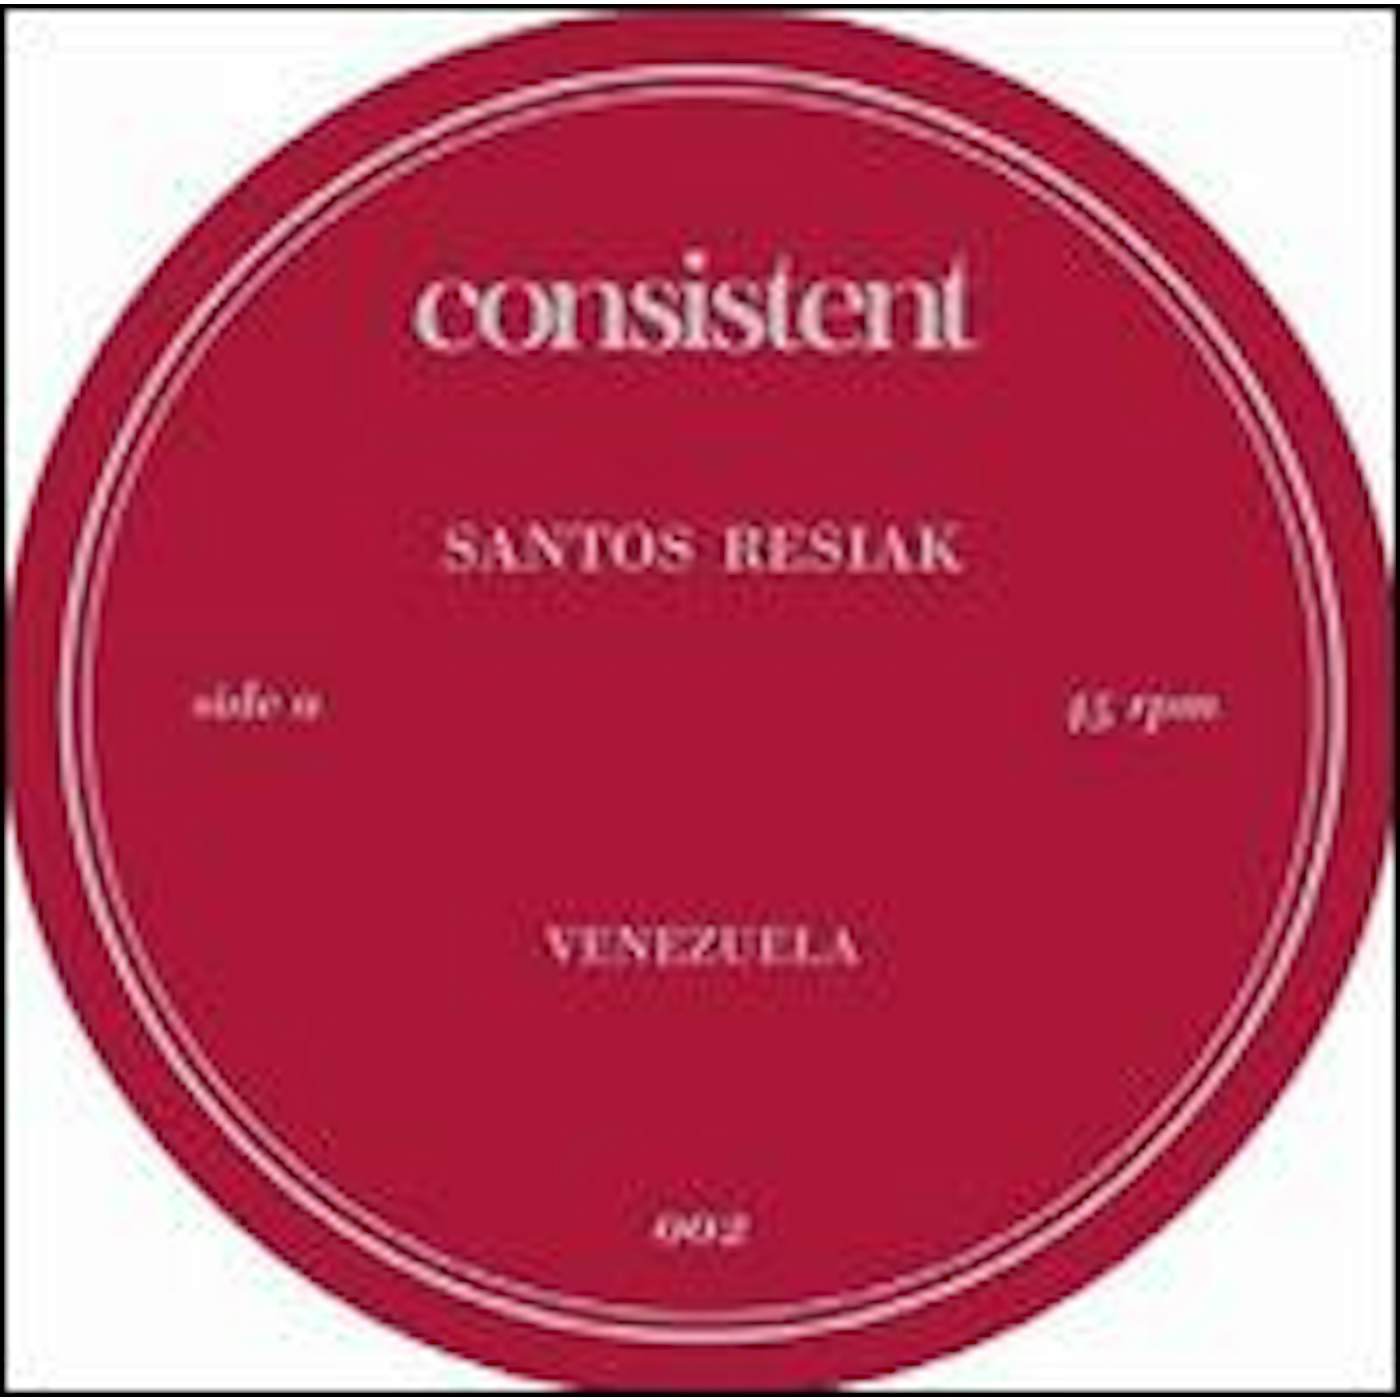 Santos Resiak CARNIVAL EP Vinyl Record